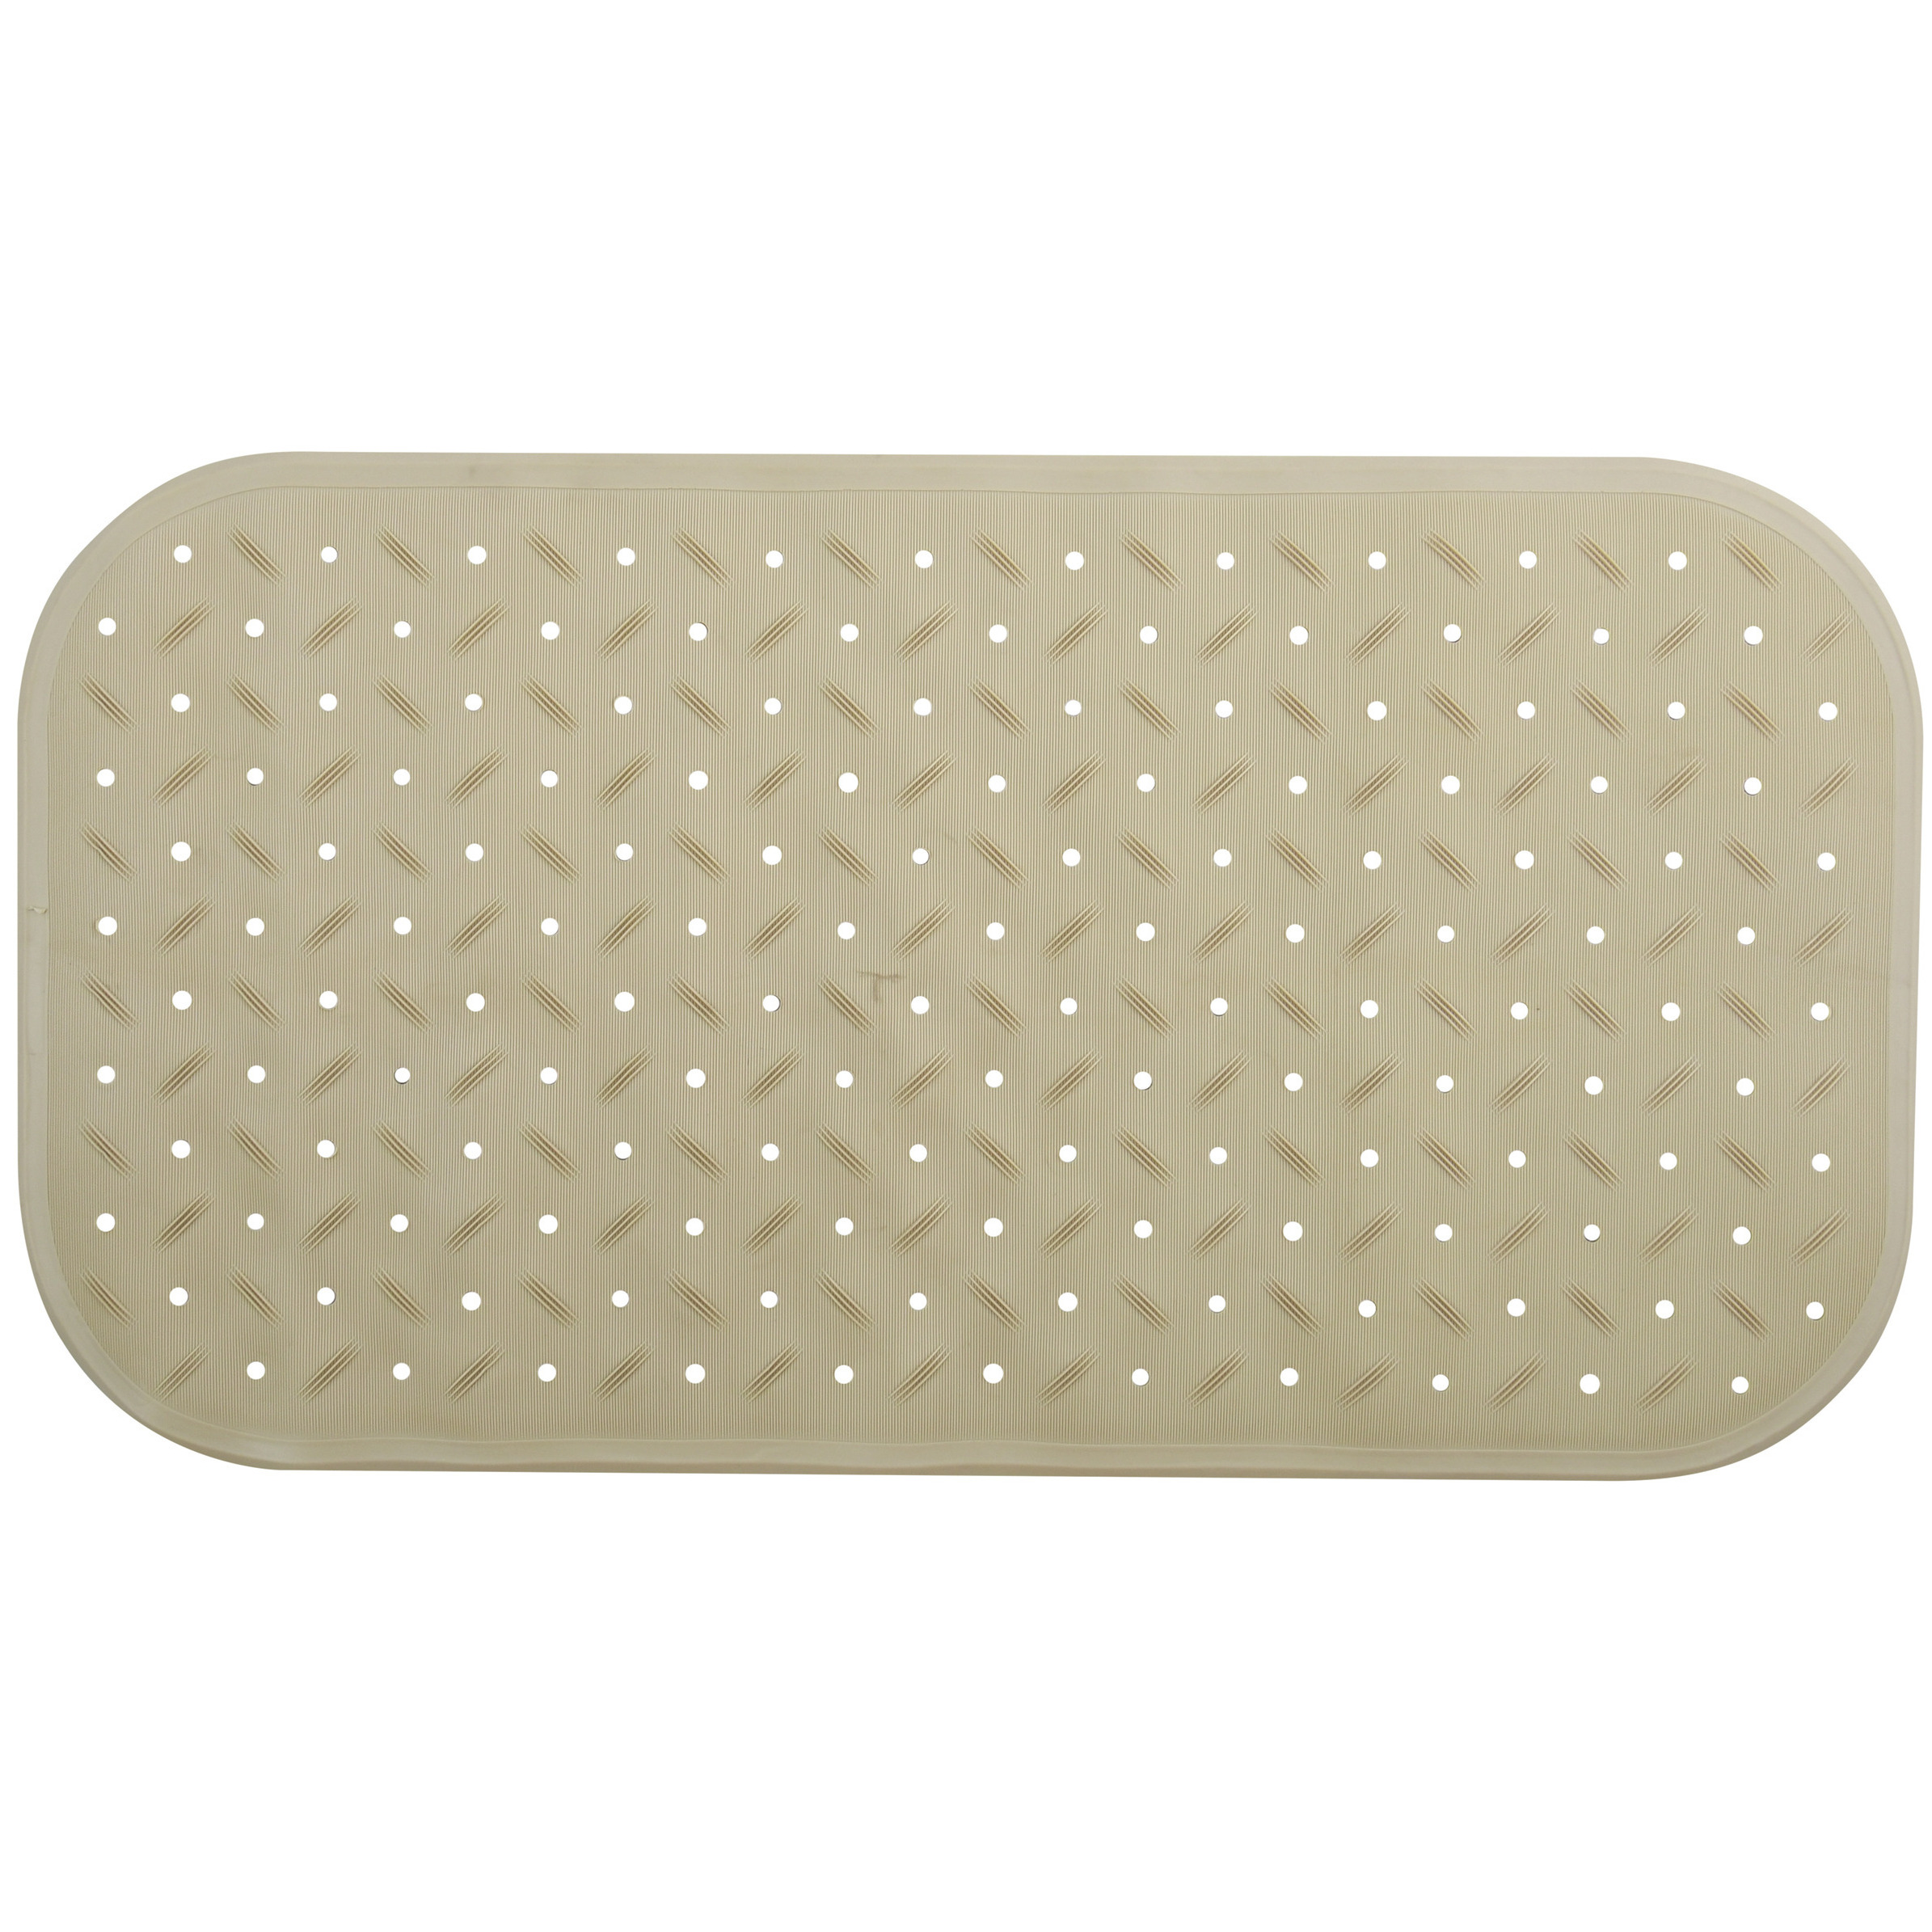 Douche-bad anti-slip mat badkamer rubber beige 36 x 76 cm rechthoek